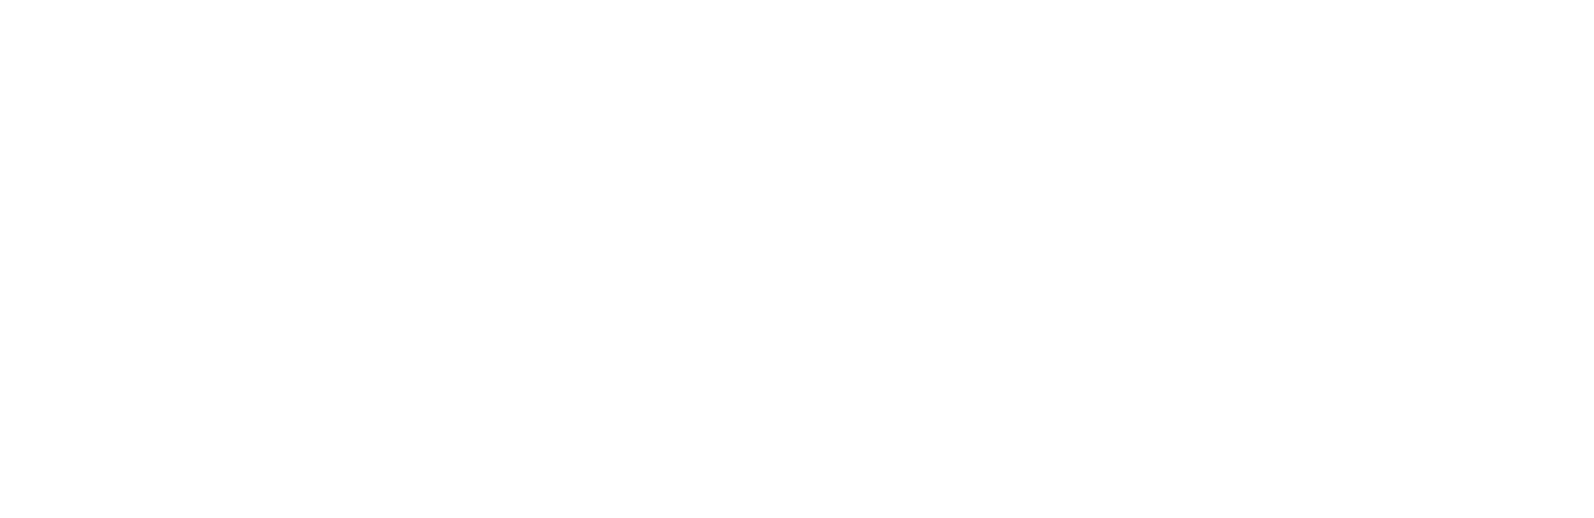 Mativ Holdings logo large for dark backgrounds (transparent PNG)